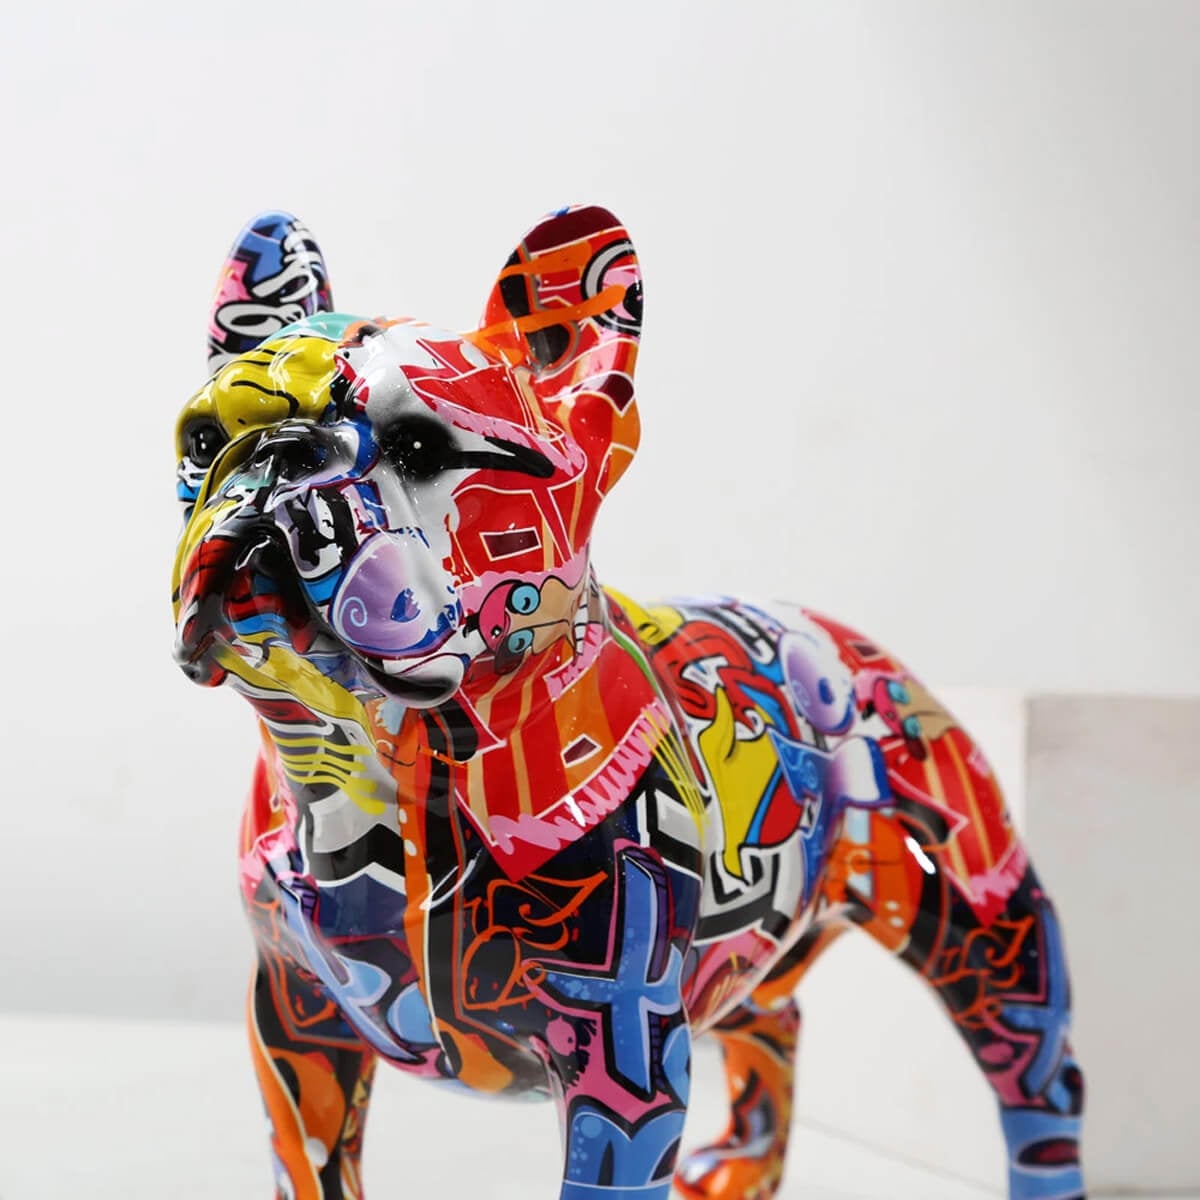 Statua di Bulldog francese Graffiti - Scultura colorata di Frenchie